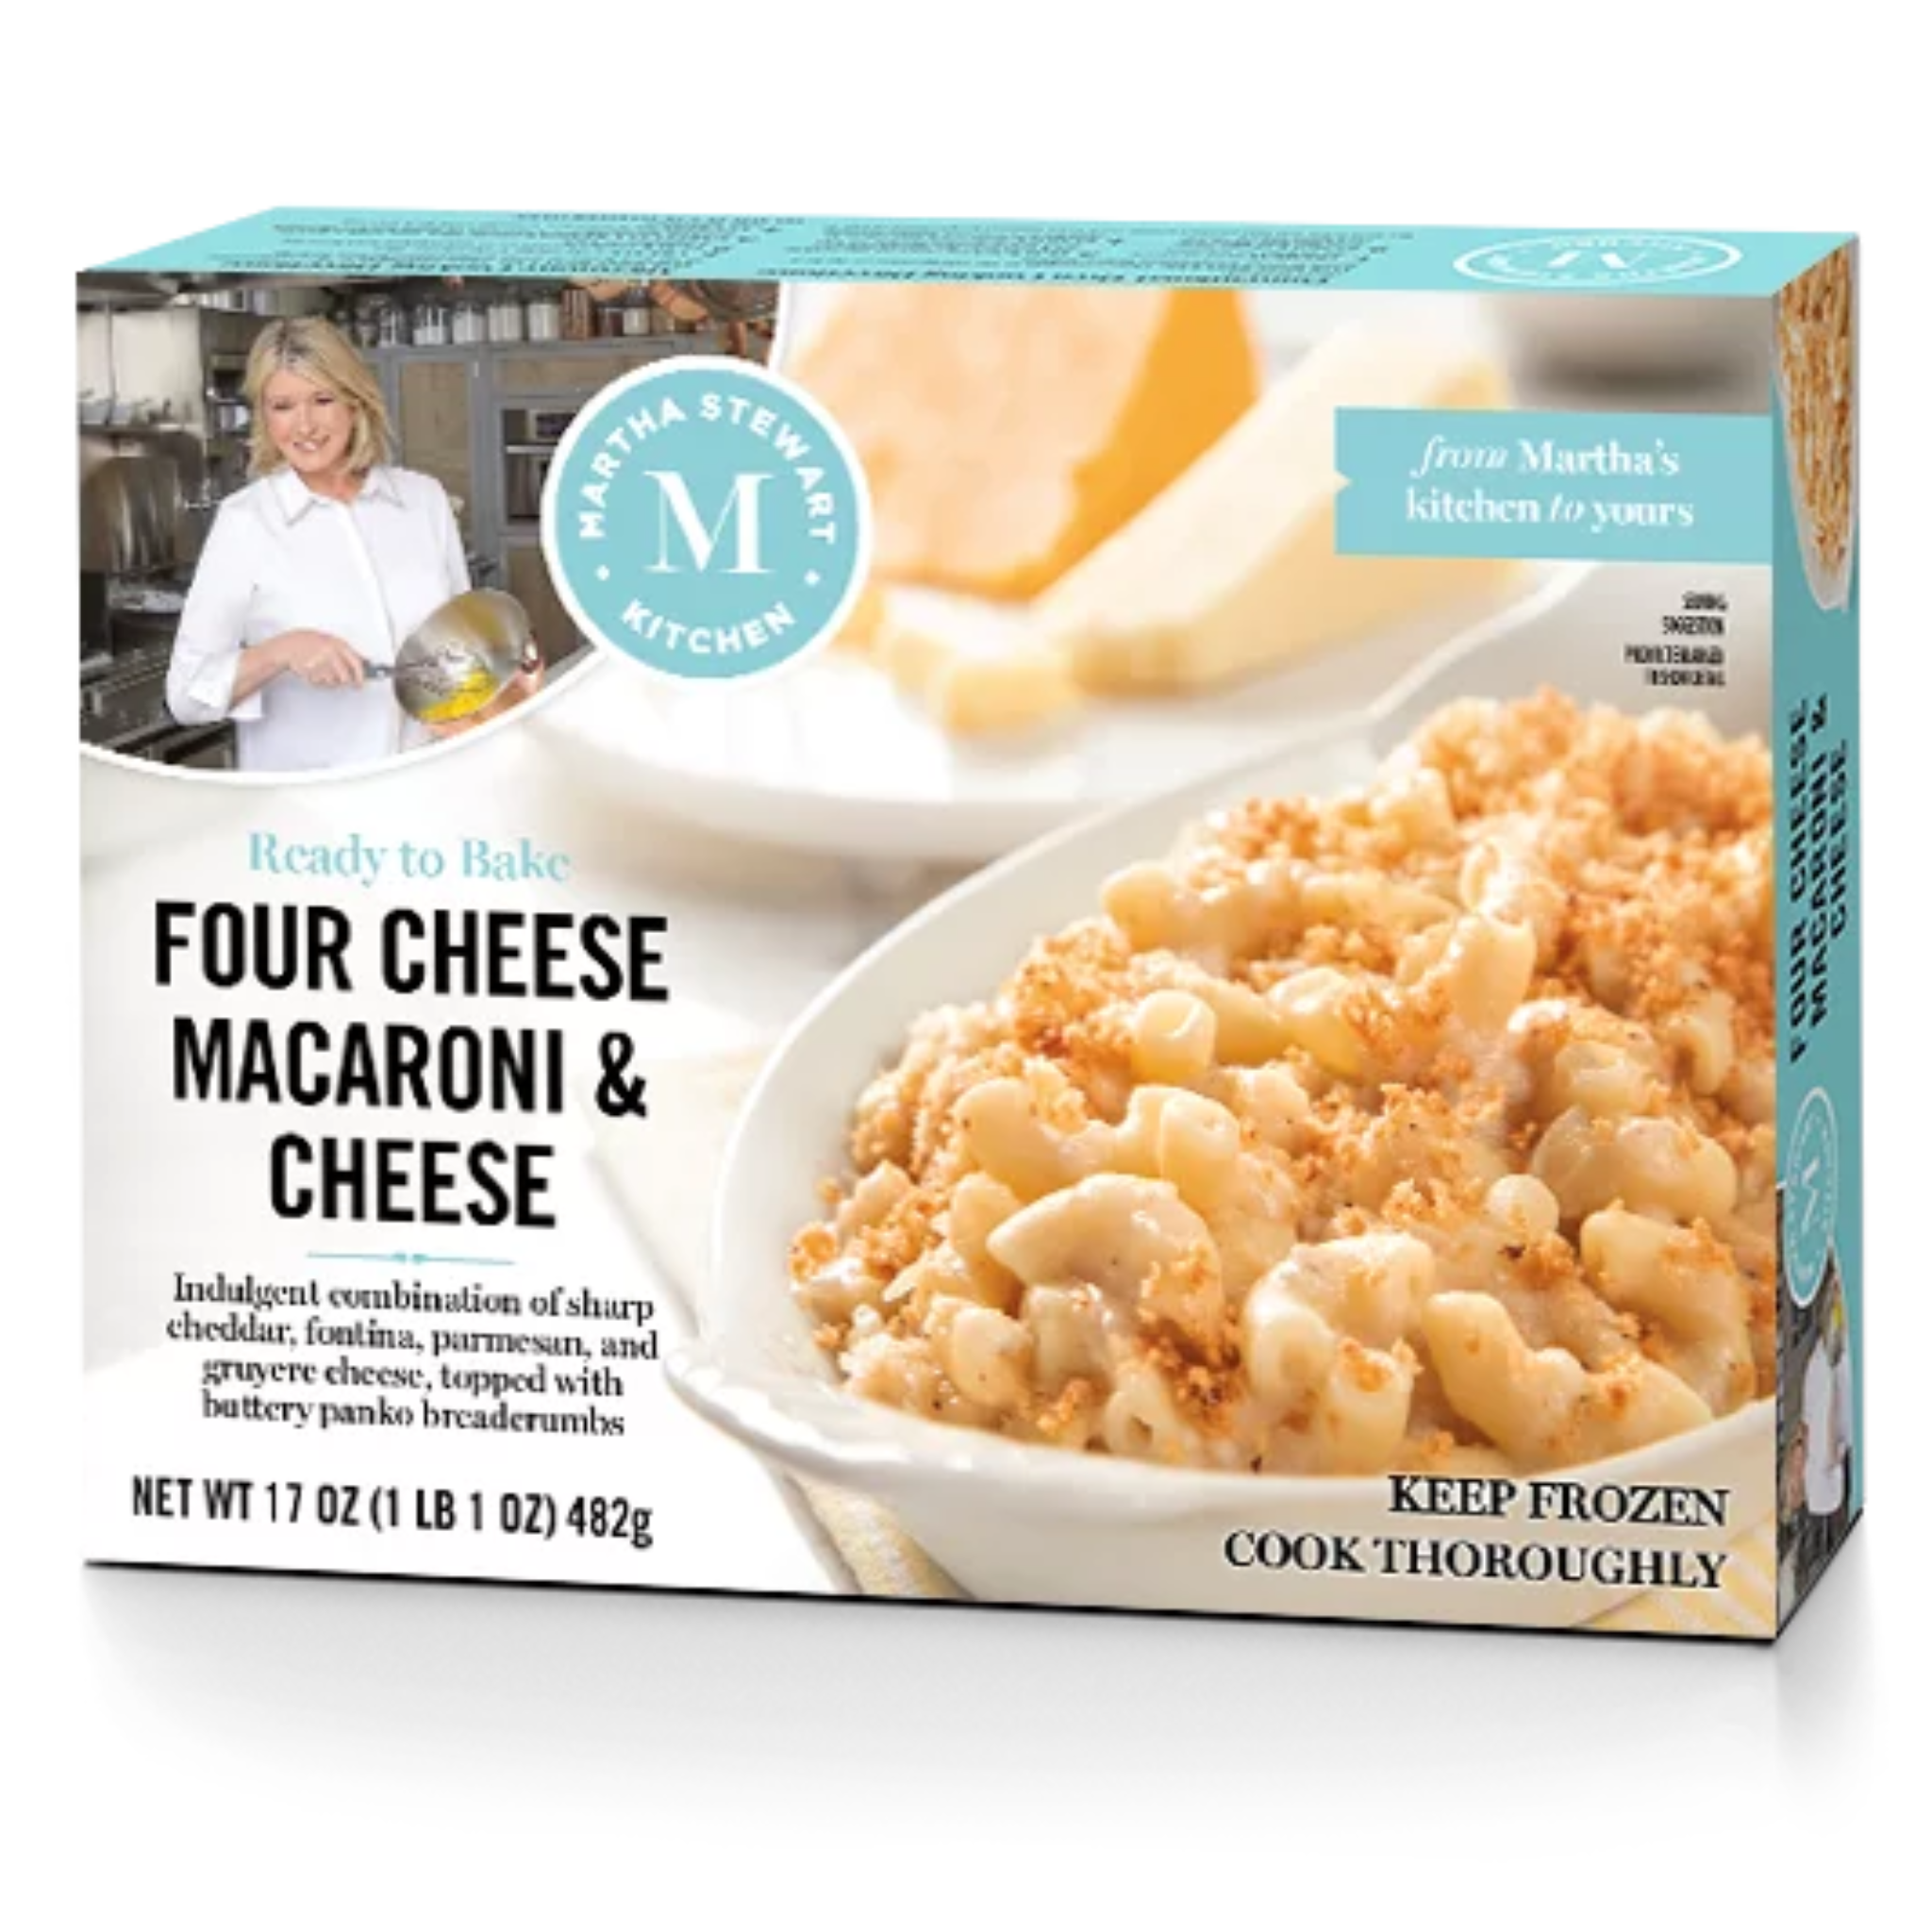 Martha Stewart Macaroni & Cheese